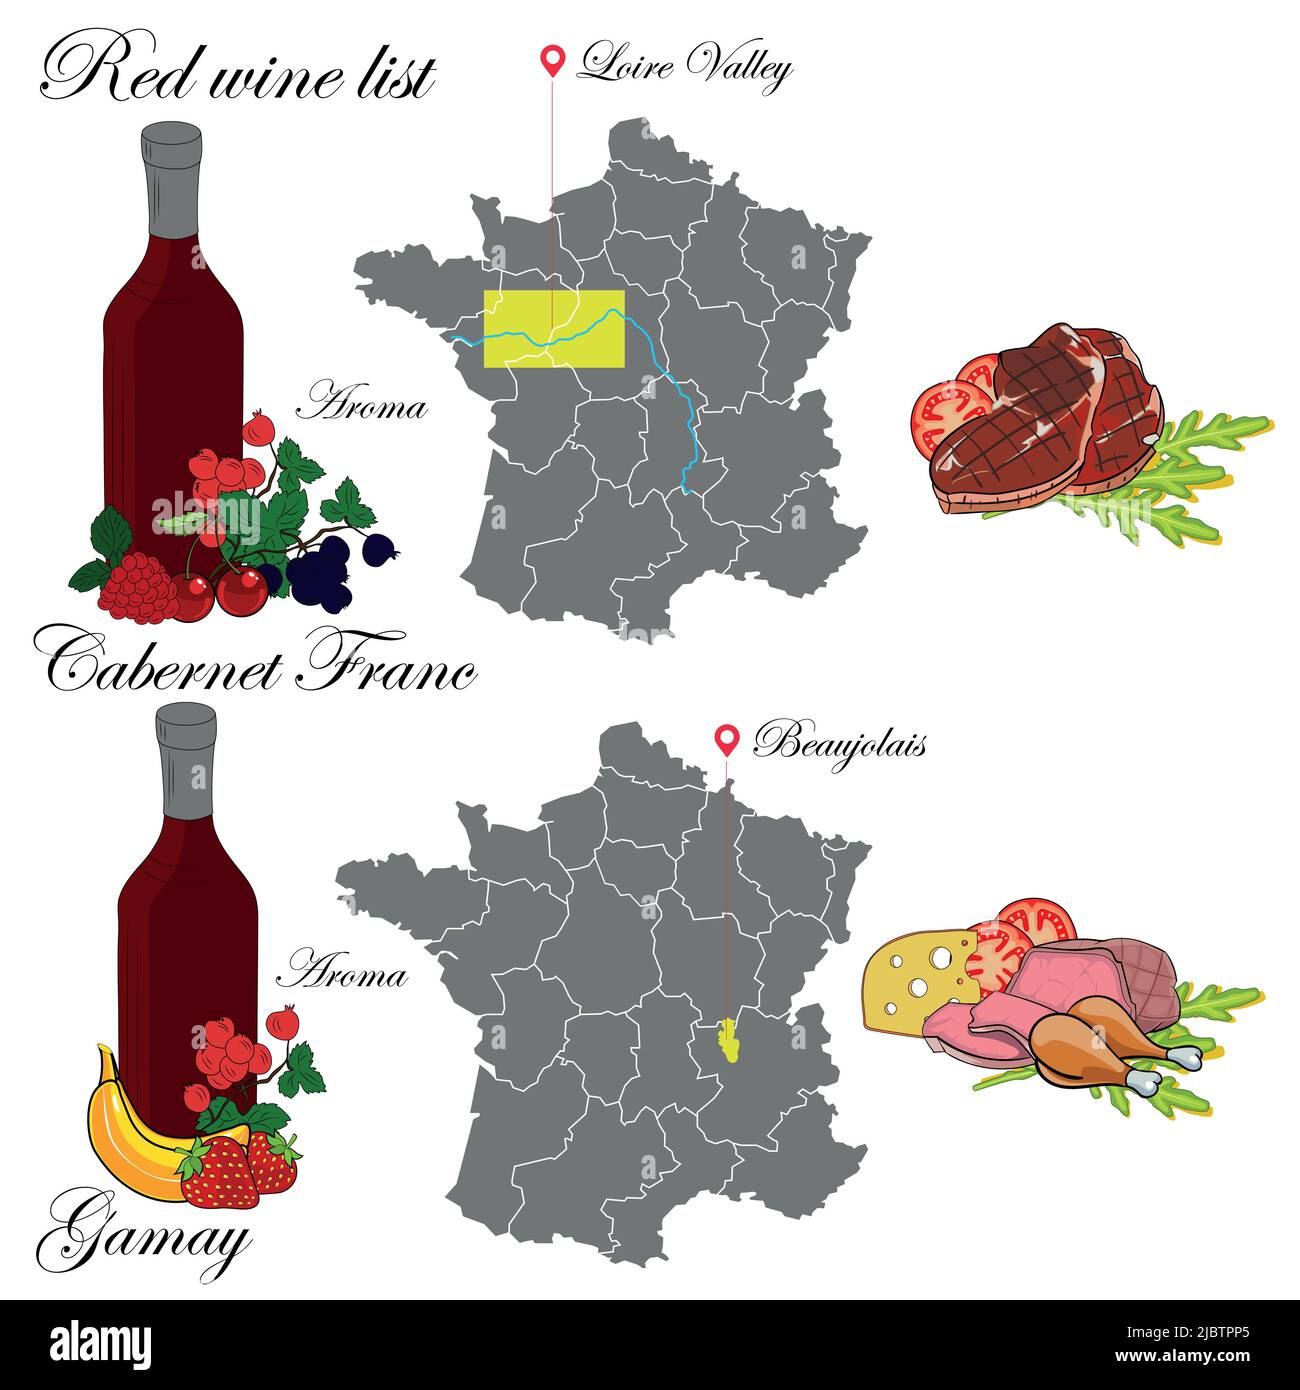 Cabernet Franc e Gamay. La carta dei vini. Un'illustrazione di un vino rosso con un esempio di aromi, una mappa dei vigneti e cibo che si abbina al vino. Illustrazione Vettoriale